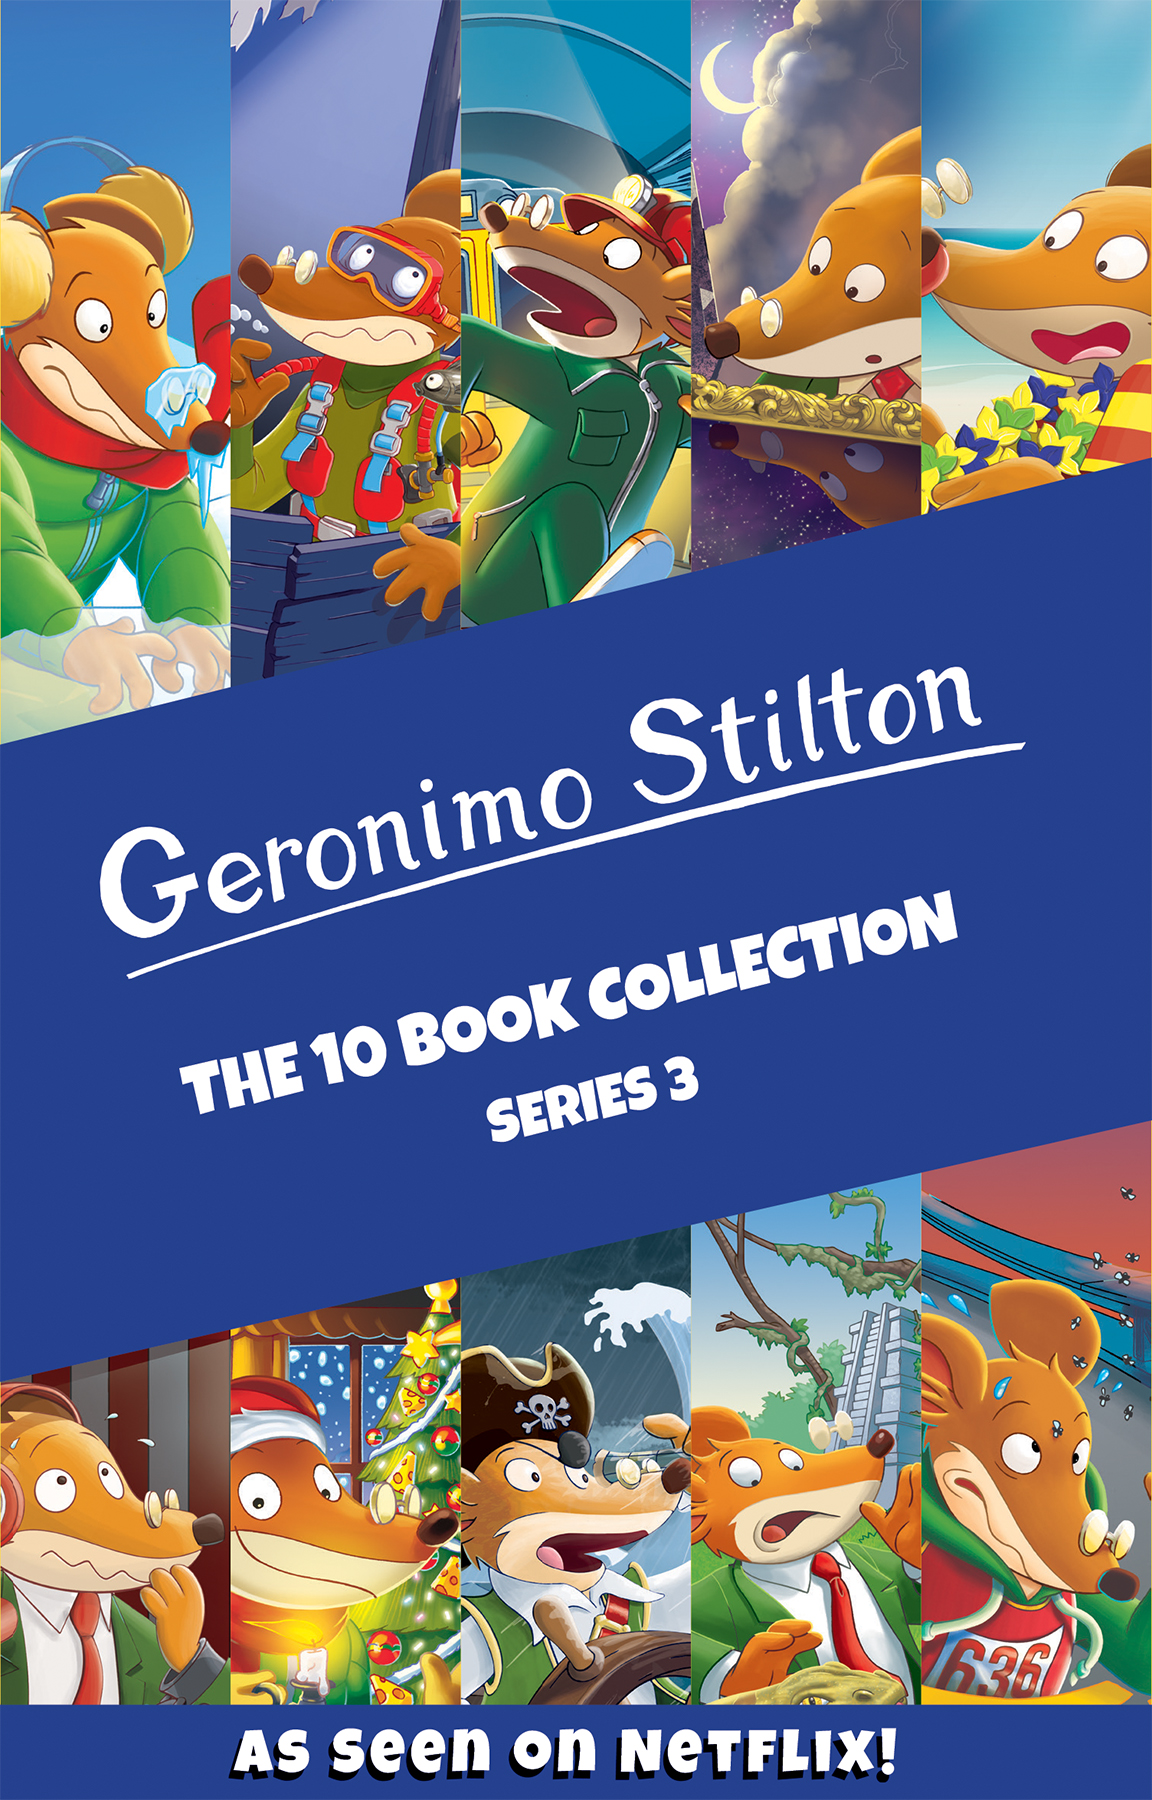 Geronimo Stilton Series 3 The 10 Book Collection Geronimo Stilton - Series 3 